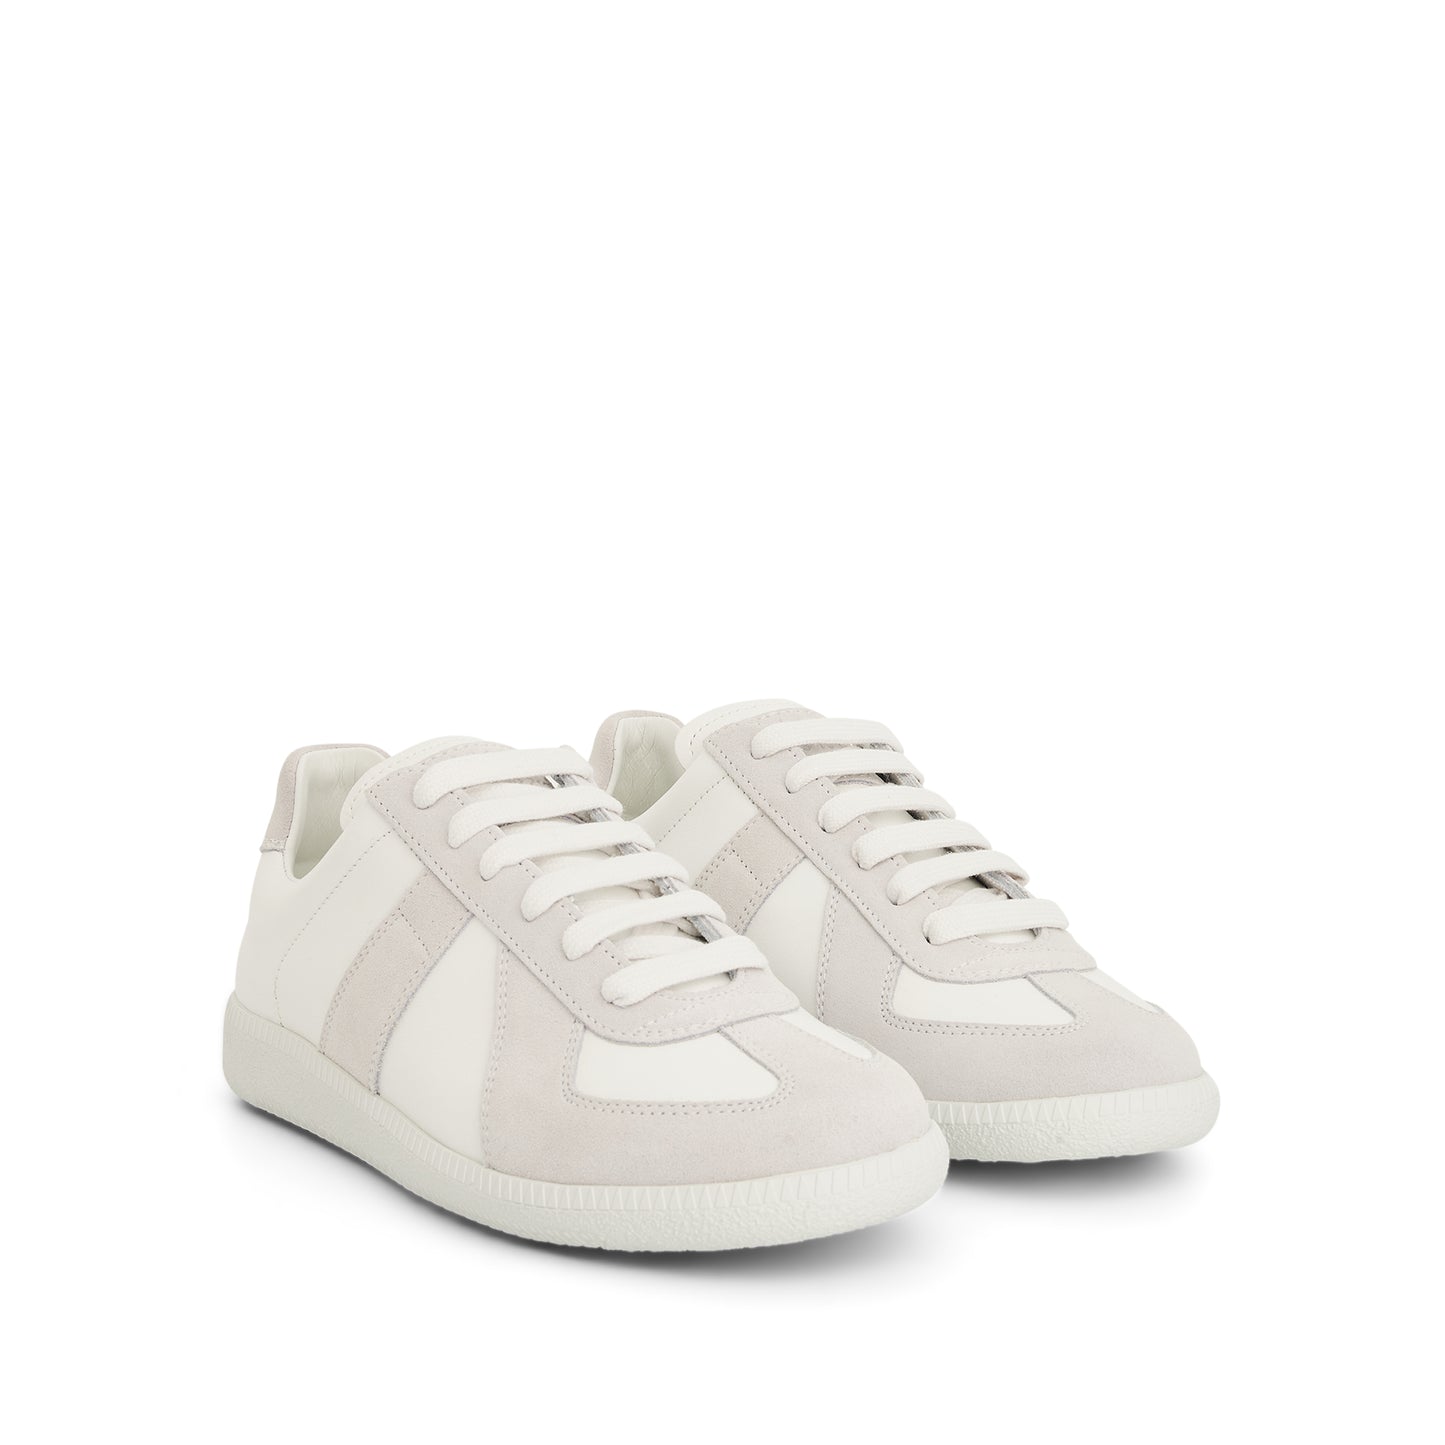 Replica Leather Sneaker in Off White